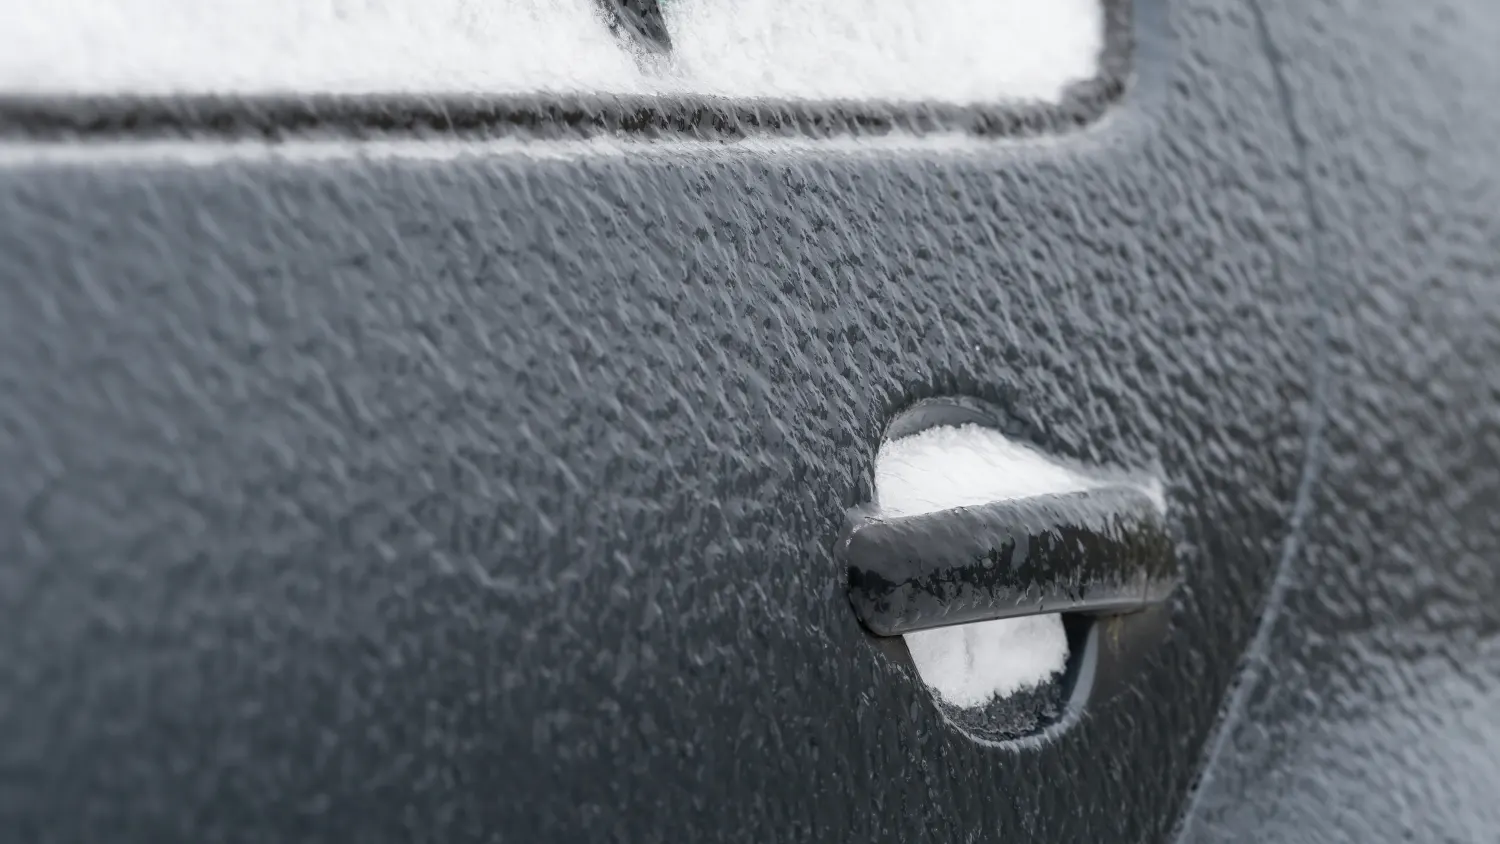 Warmes Wasser oder Enteiserspray: Was hilft bei einer zugefrorenen Autotür?